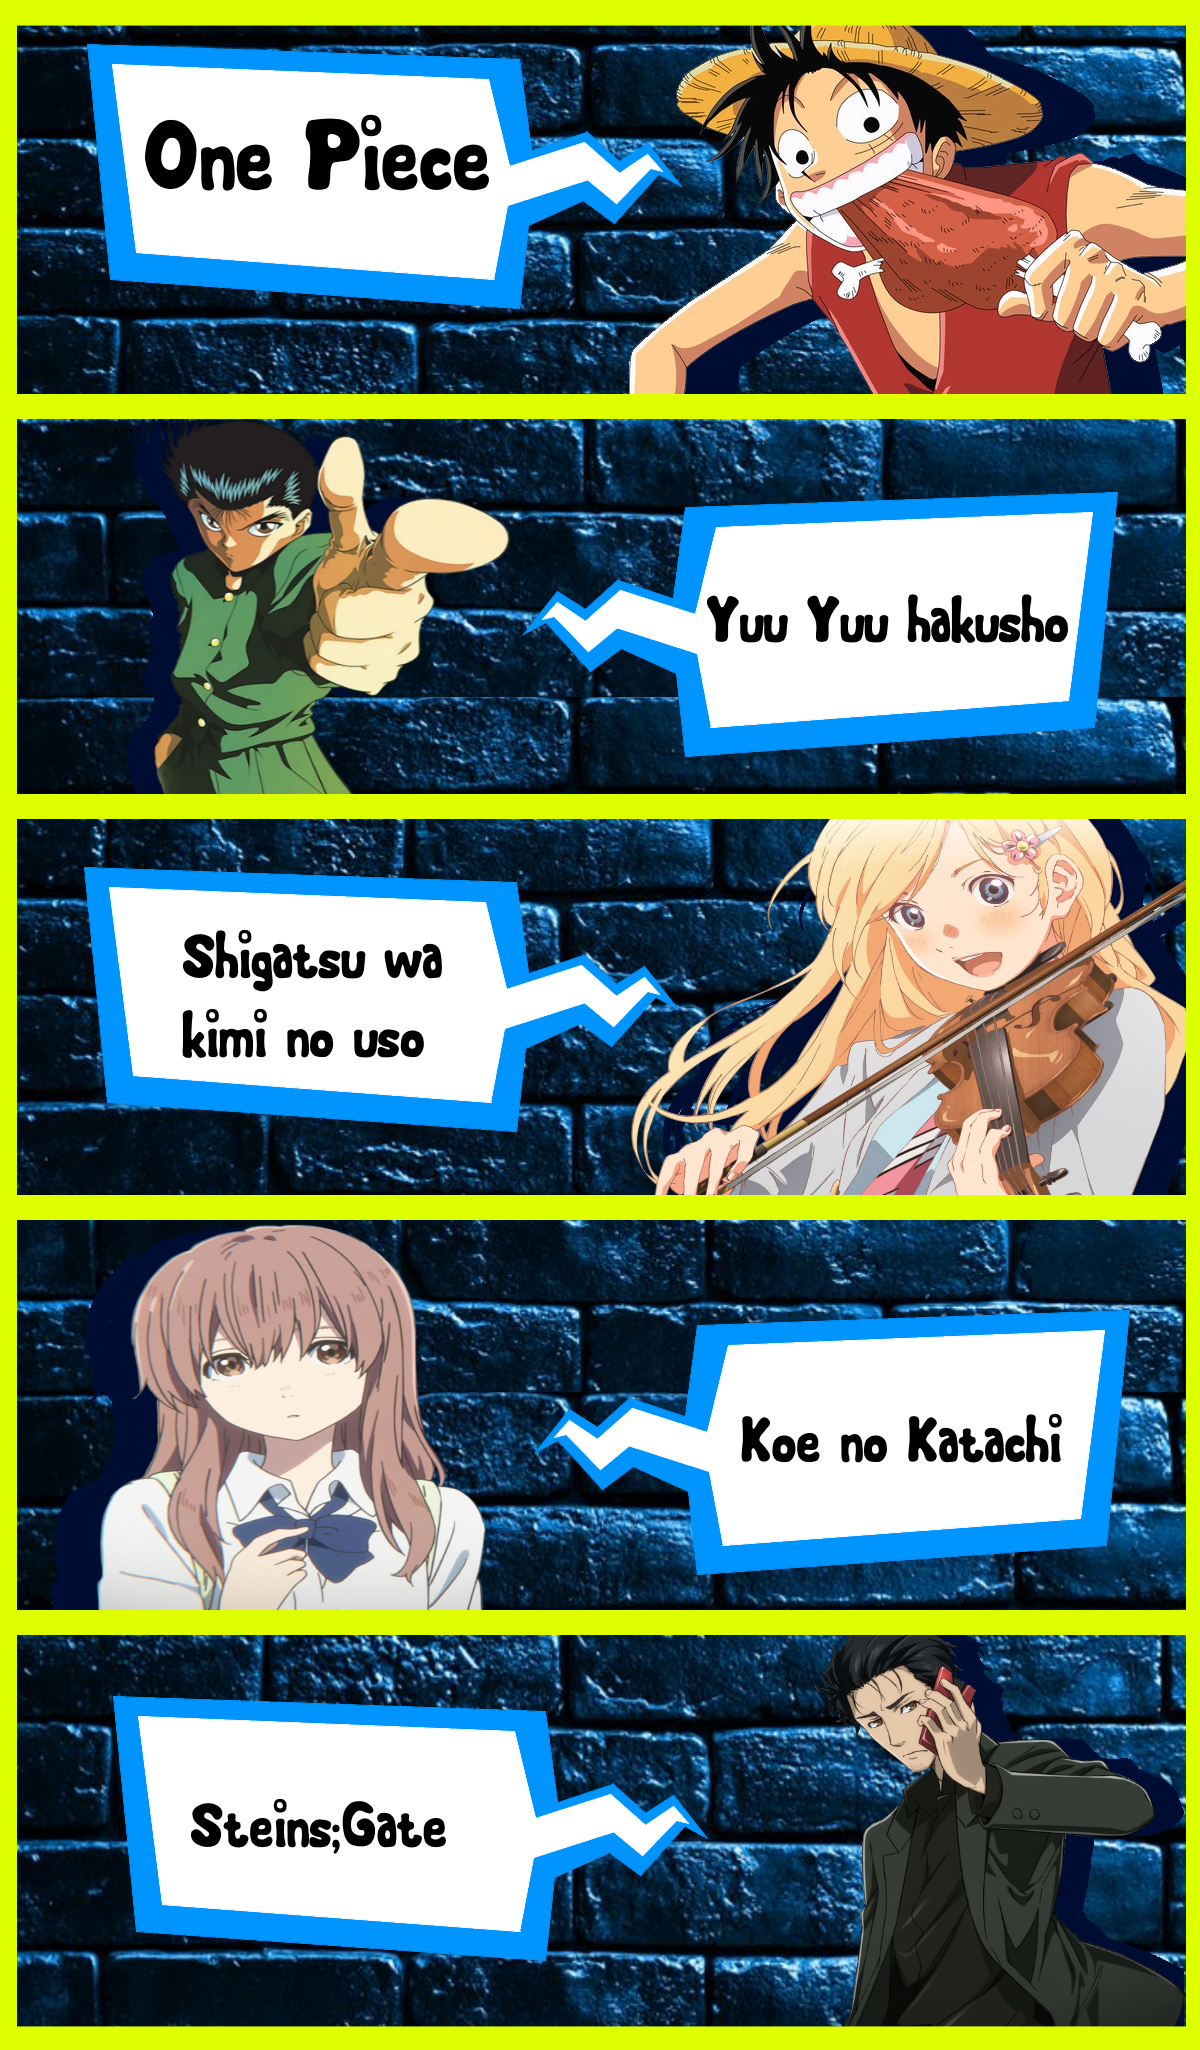 Anime Frases - - Kaori Miyazono Anime: Shigatsu wa Kimi no Uso